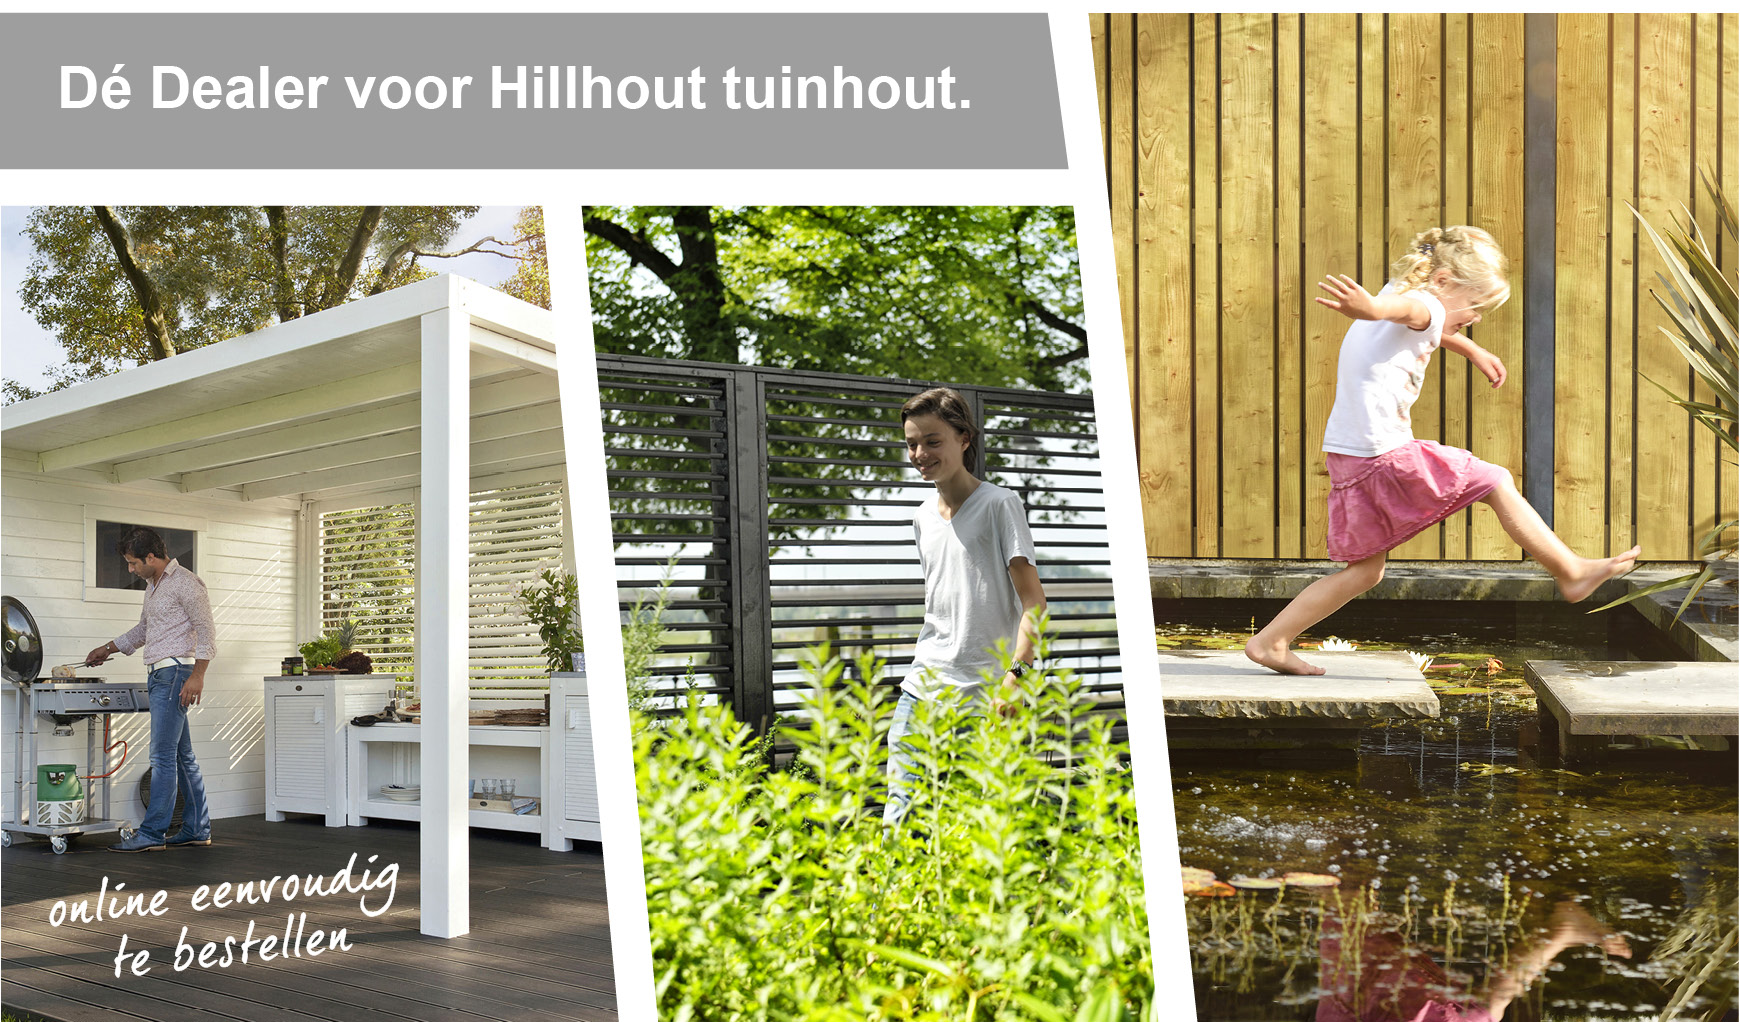 Respectvol verjaardag halfrond Hillhout tuinhout ✓ Volledig assortiment in onze webwinkel